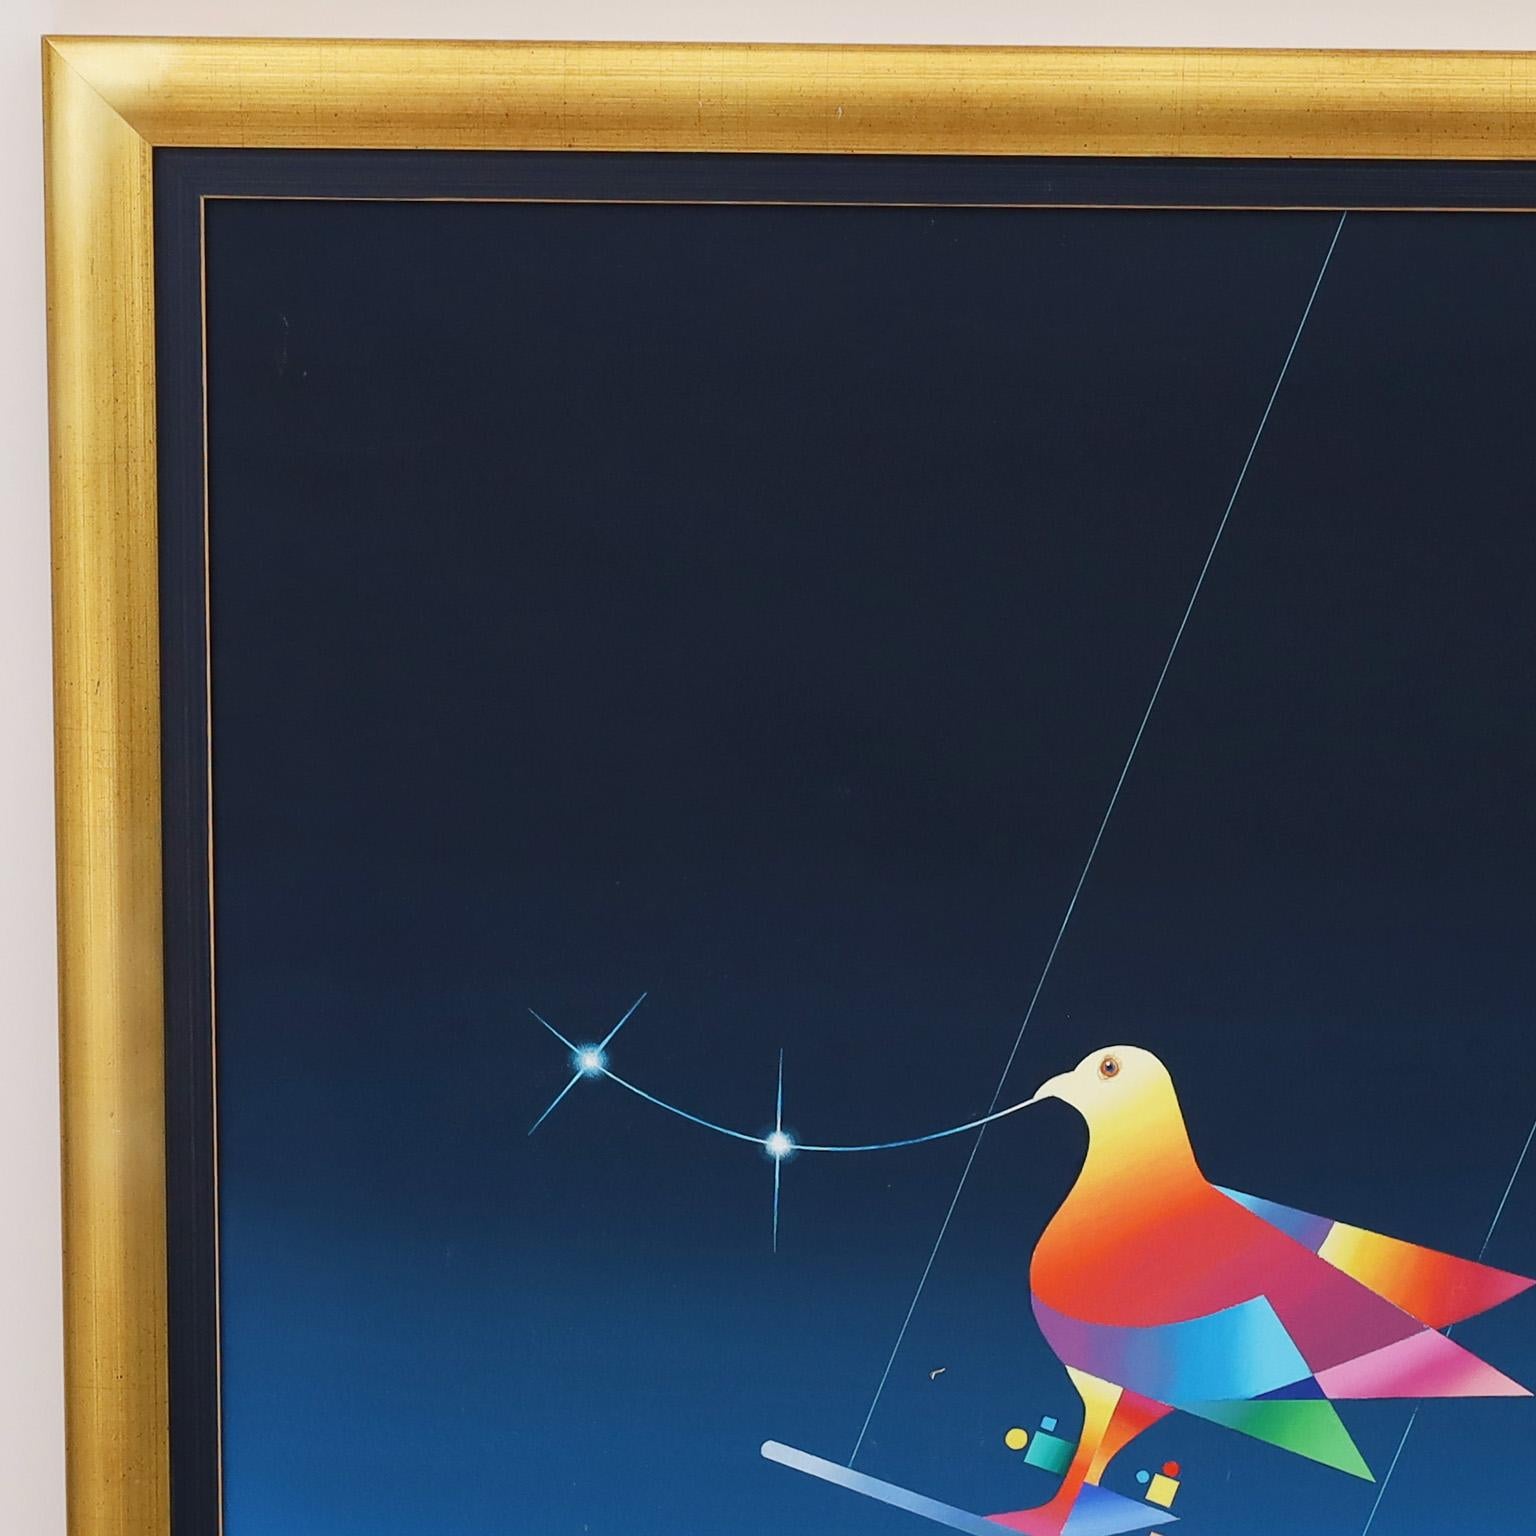 Eblouissante peinture à l'huile sur toile d'une colombe magique sur un trapèze avec des drapeaux sous une pleine lune. Exécuté dans un style surréaliste moderne. Signé par le célèbre artiste brésilien Braz Dias et présenté dans un cadre en bois doré.